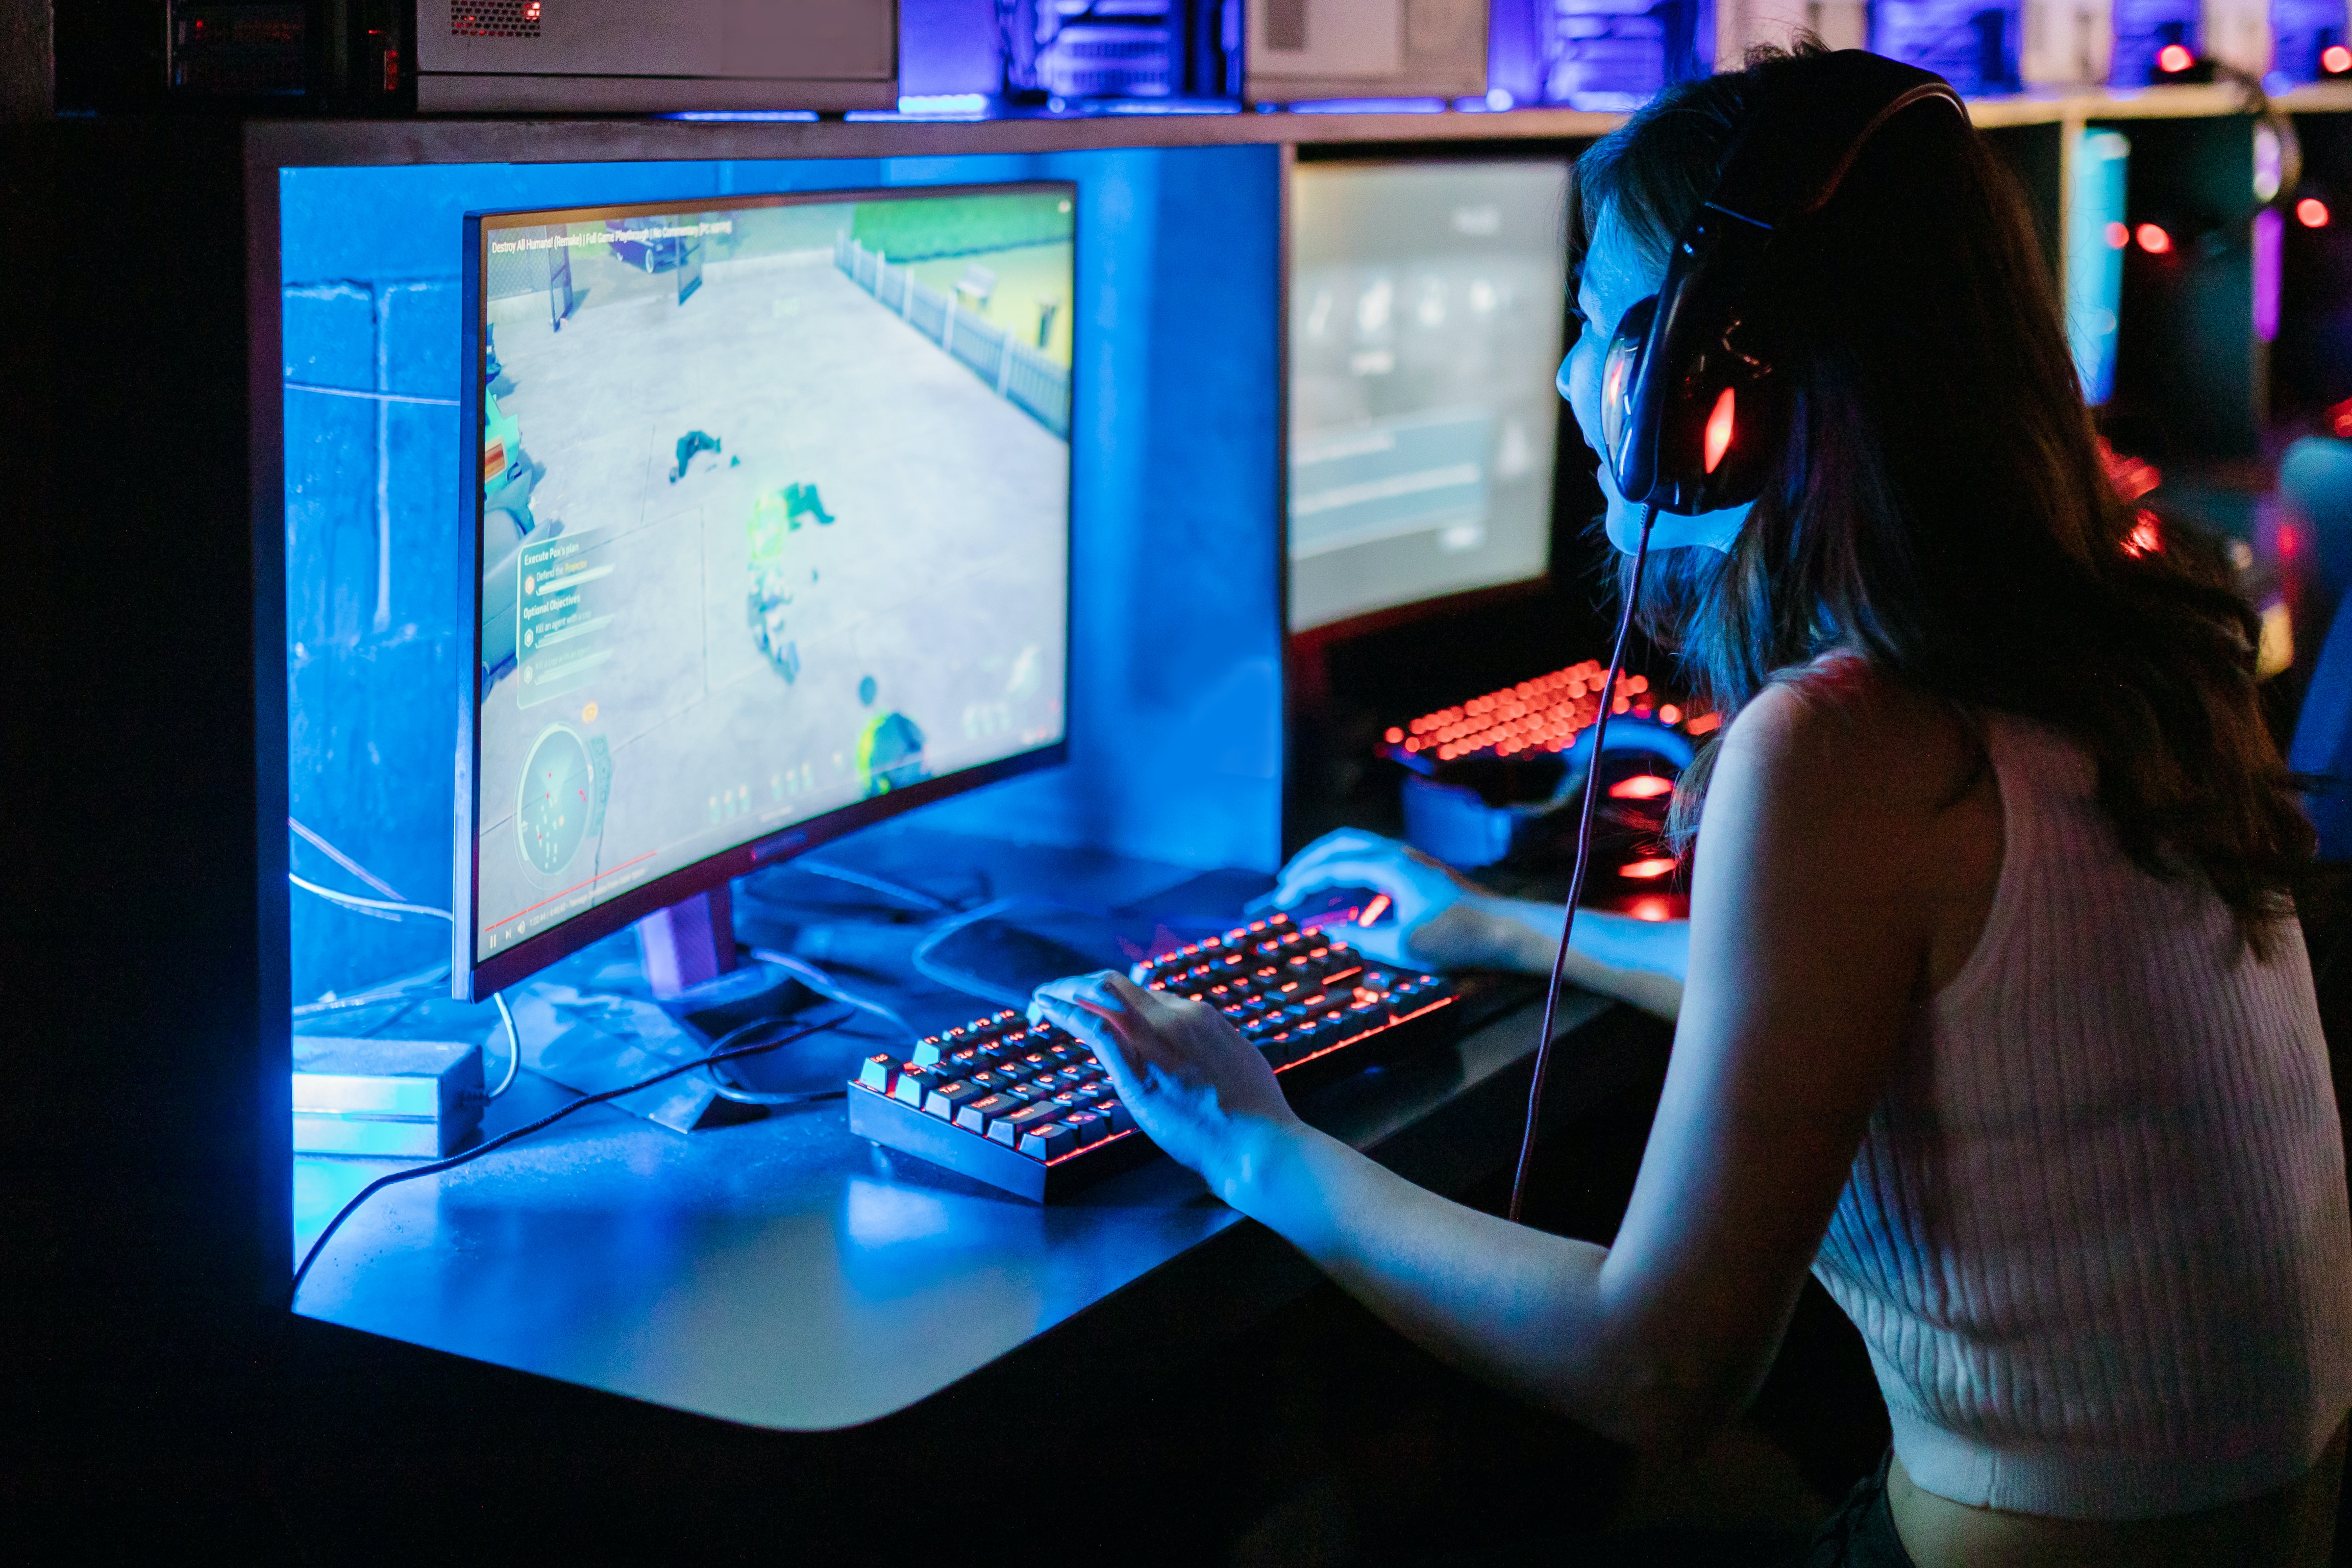 Los gamers profesionales pasan hasta 8 o 9 horas frente a la computadora y necesitan prepararse a todo nivel.  (Foto Prensa Libre: Rodnae Productions/Pexels)